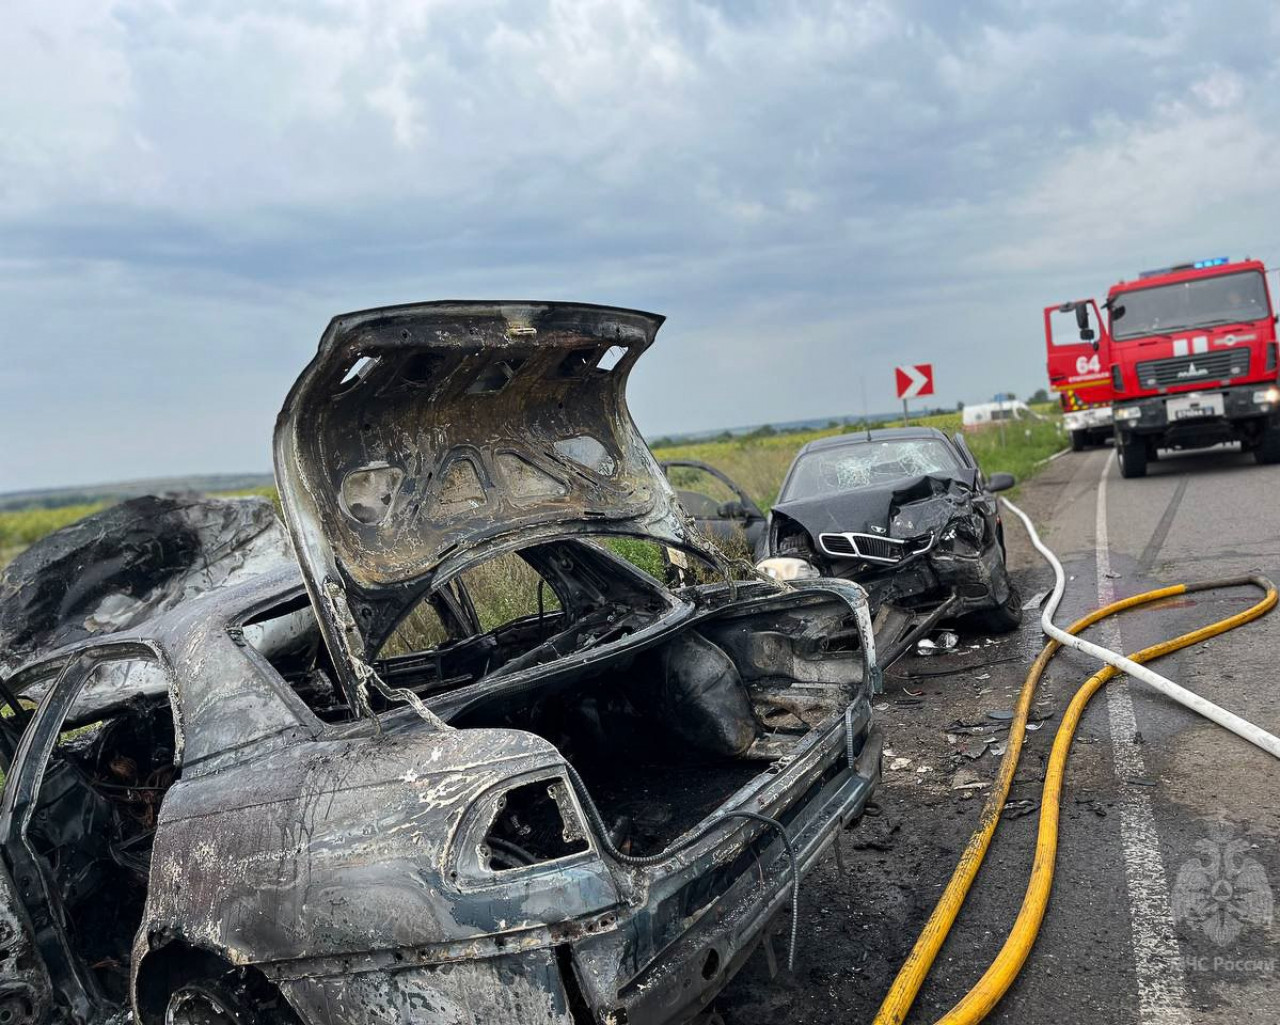 Спасателям пришлось тушить два горящих авто после ДТП в ЛНР